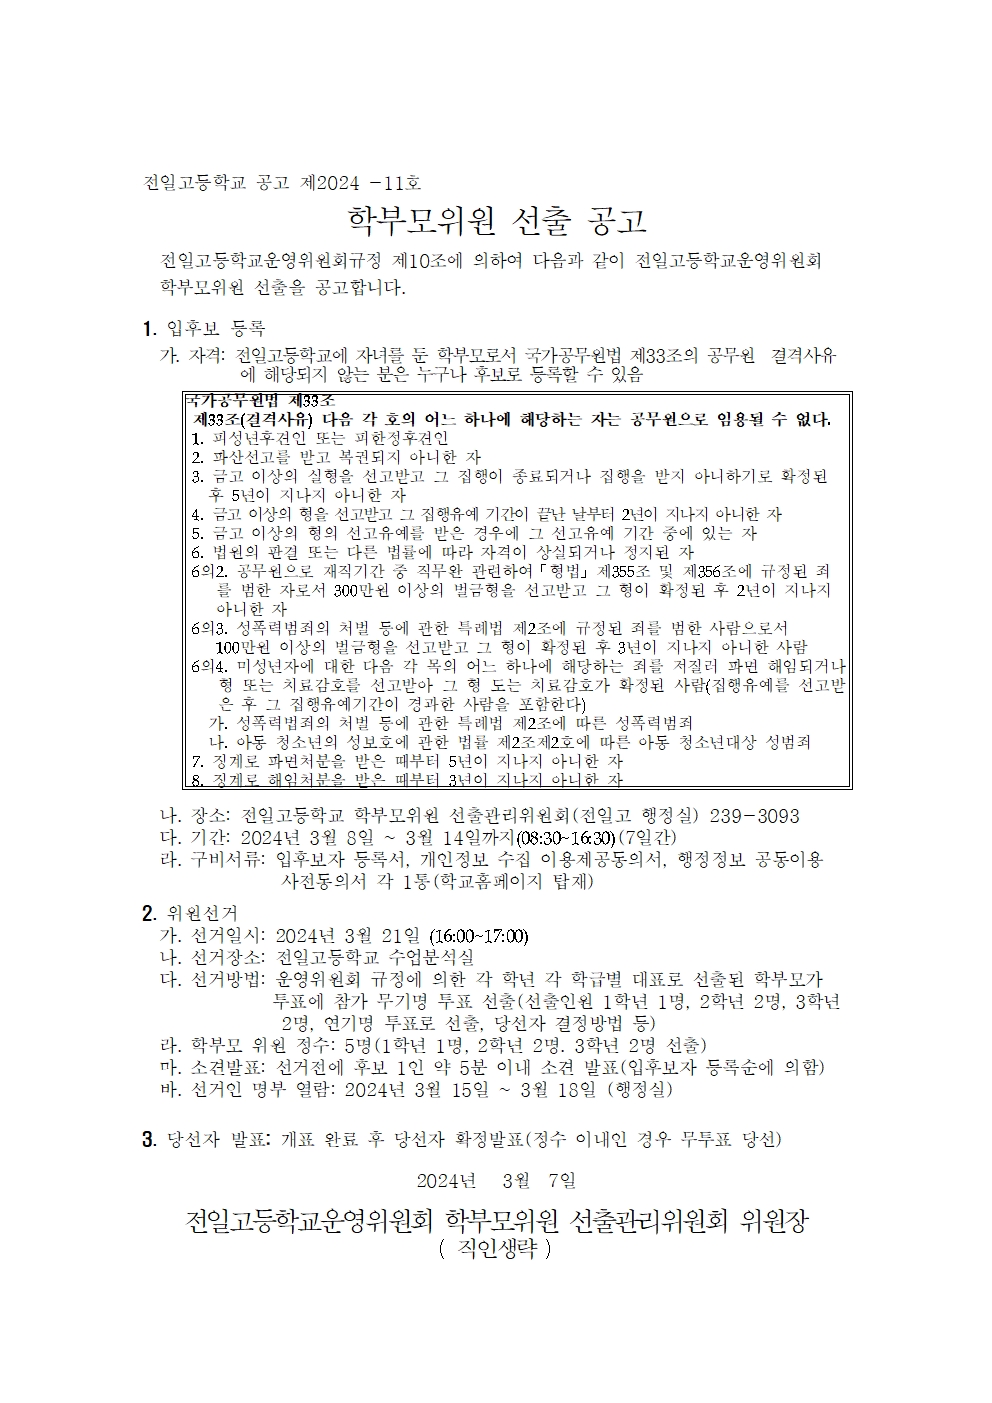 4.학부모위원 선출 공고문 및 홍보안내문001